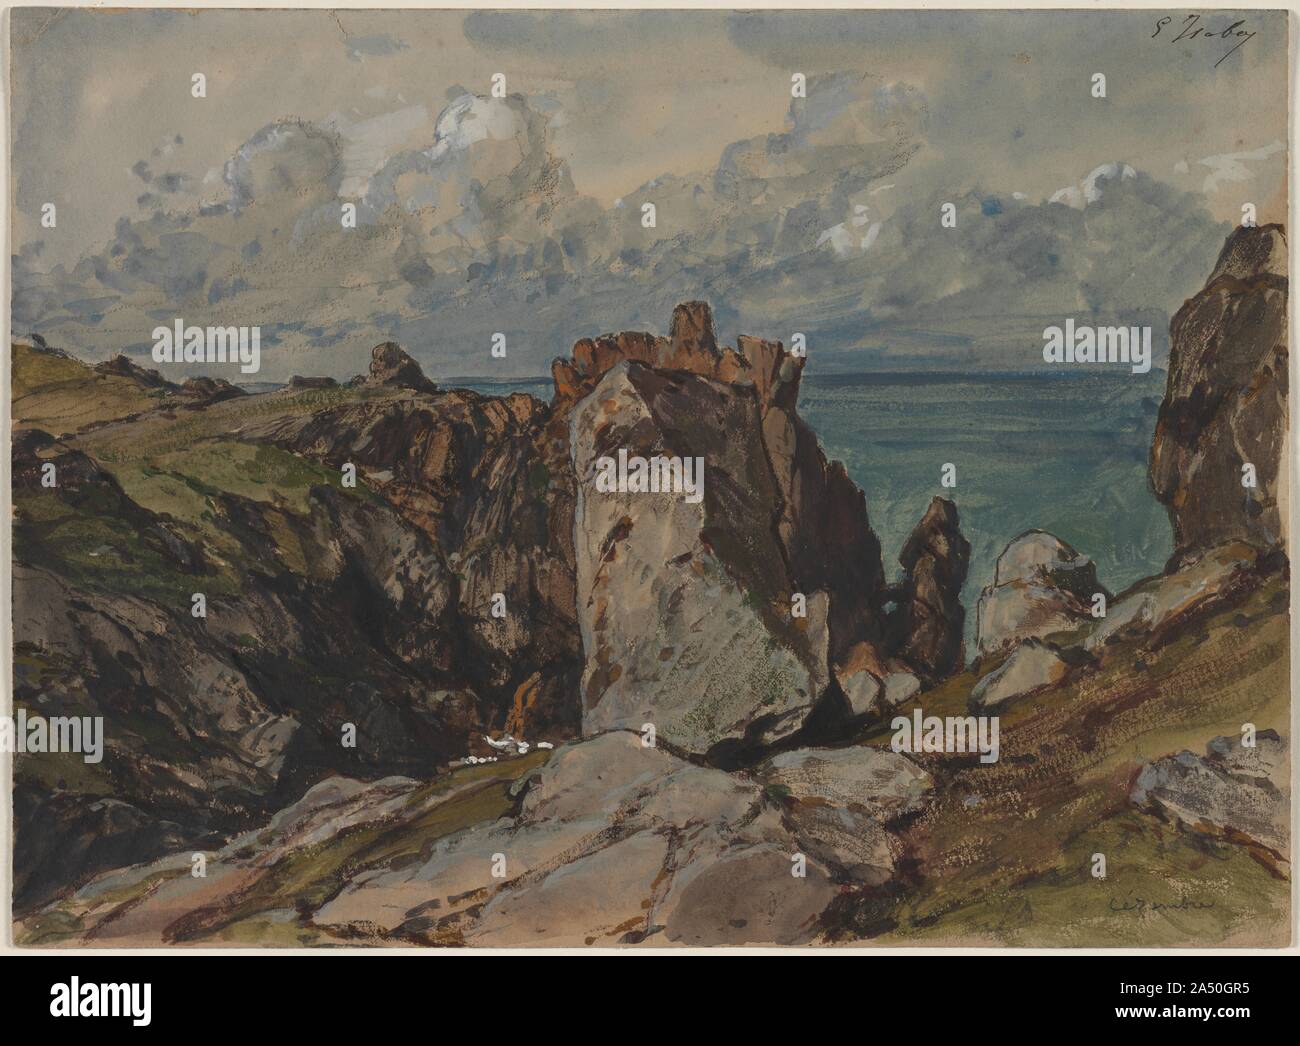 Klippen am Meer bei C&#xe9;zembre, Bretagne, C. 1830. Isabey wurde vor allem für seine Aquarelle und Gemälde der Meeres- und Strandszenen bekannt. Als junger Künstler, er traf und befreundete Eugene Delacroix und Richard Parkes Bonington und reisten mit ihnen nach England im Jahre 1825, wo er in der Lage war, die Arbeit von J. M. W. Turner zu studieren und die Englische Watercolorists aussetzen. Isabey war einer der ersten französischen Maler en plein air, oder direkt aus der Natur. Er erwies sich als wichtige Französische zu landschafter, dessen Leben fast das ganze 19. Jahrhundert überspannte. Er trug Abbildungen auf der Reise pitto Stockfoto